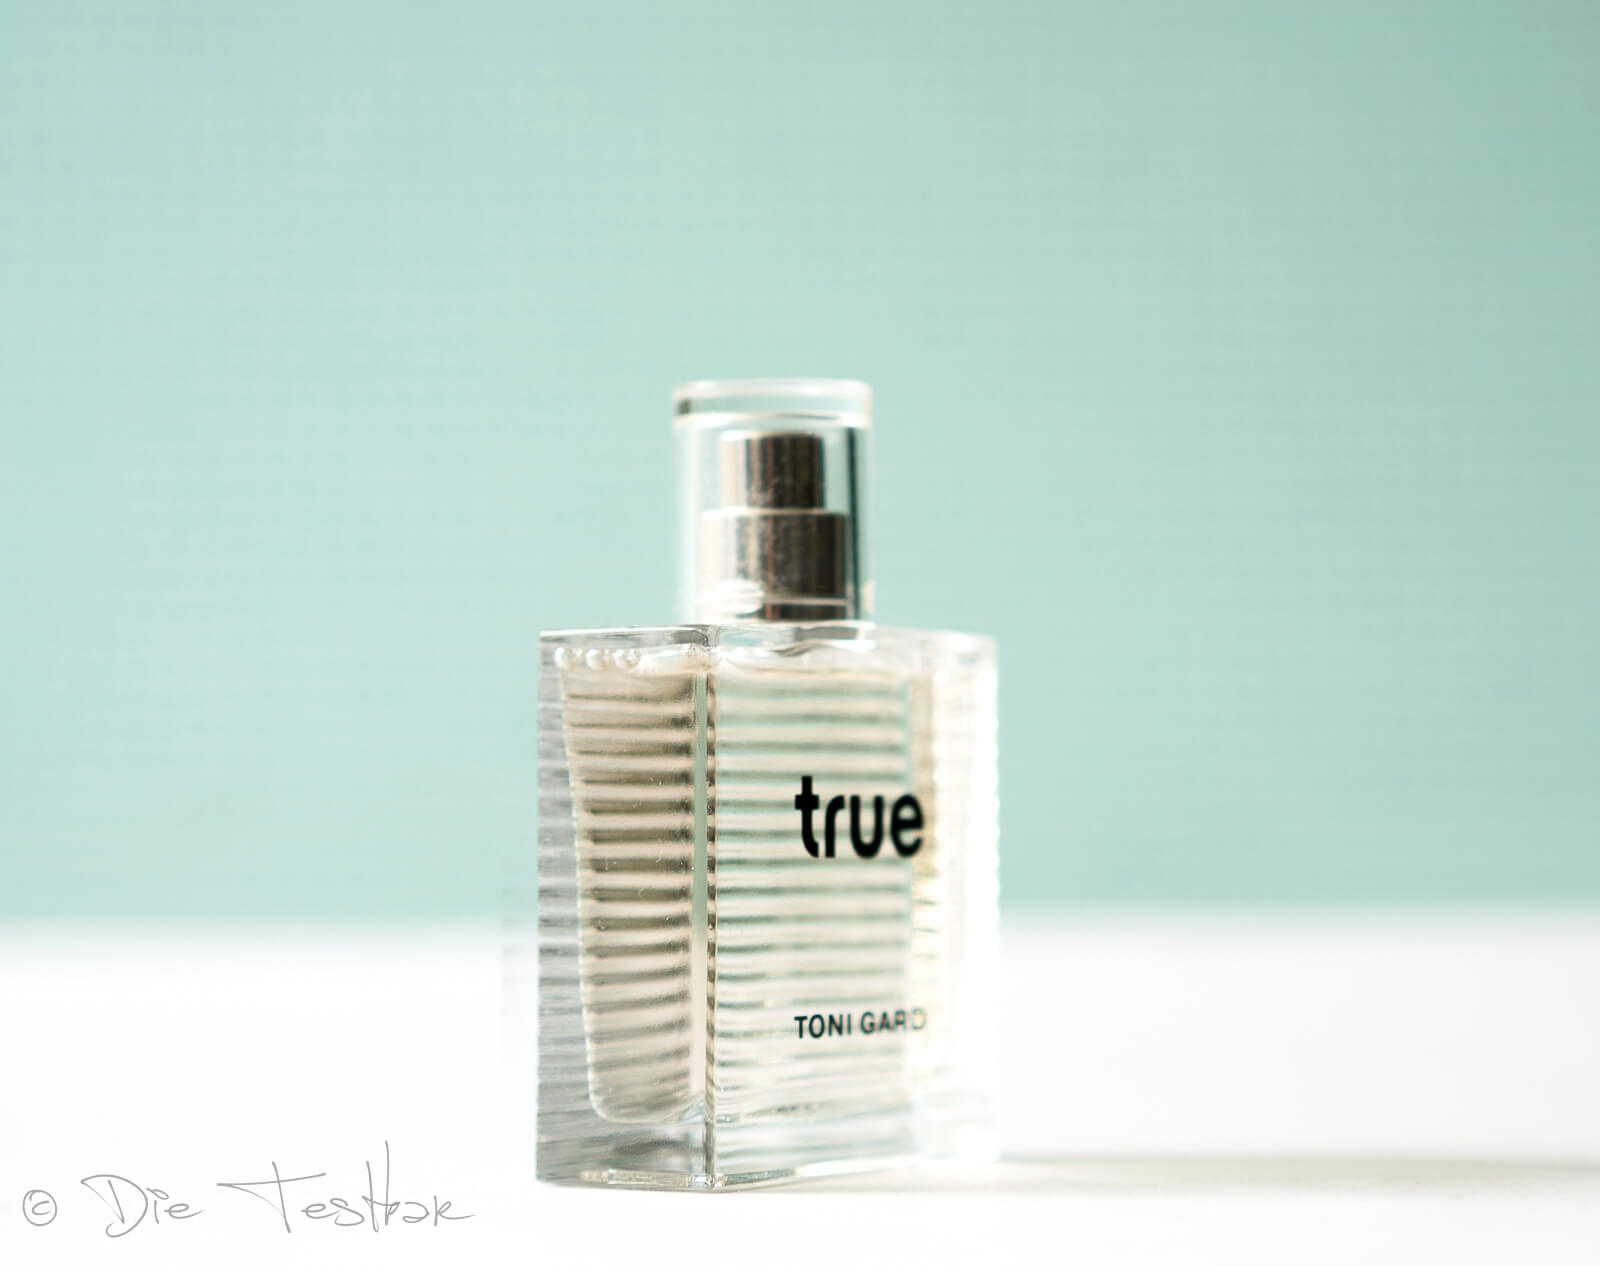 Toni Gard - true - Ein Duft der wahrhaftigkeit symbolisiert